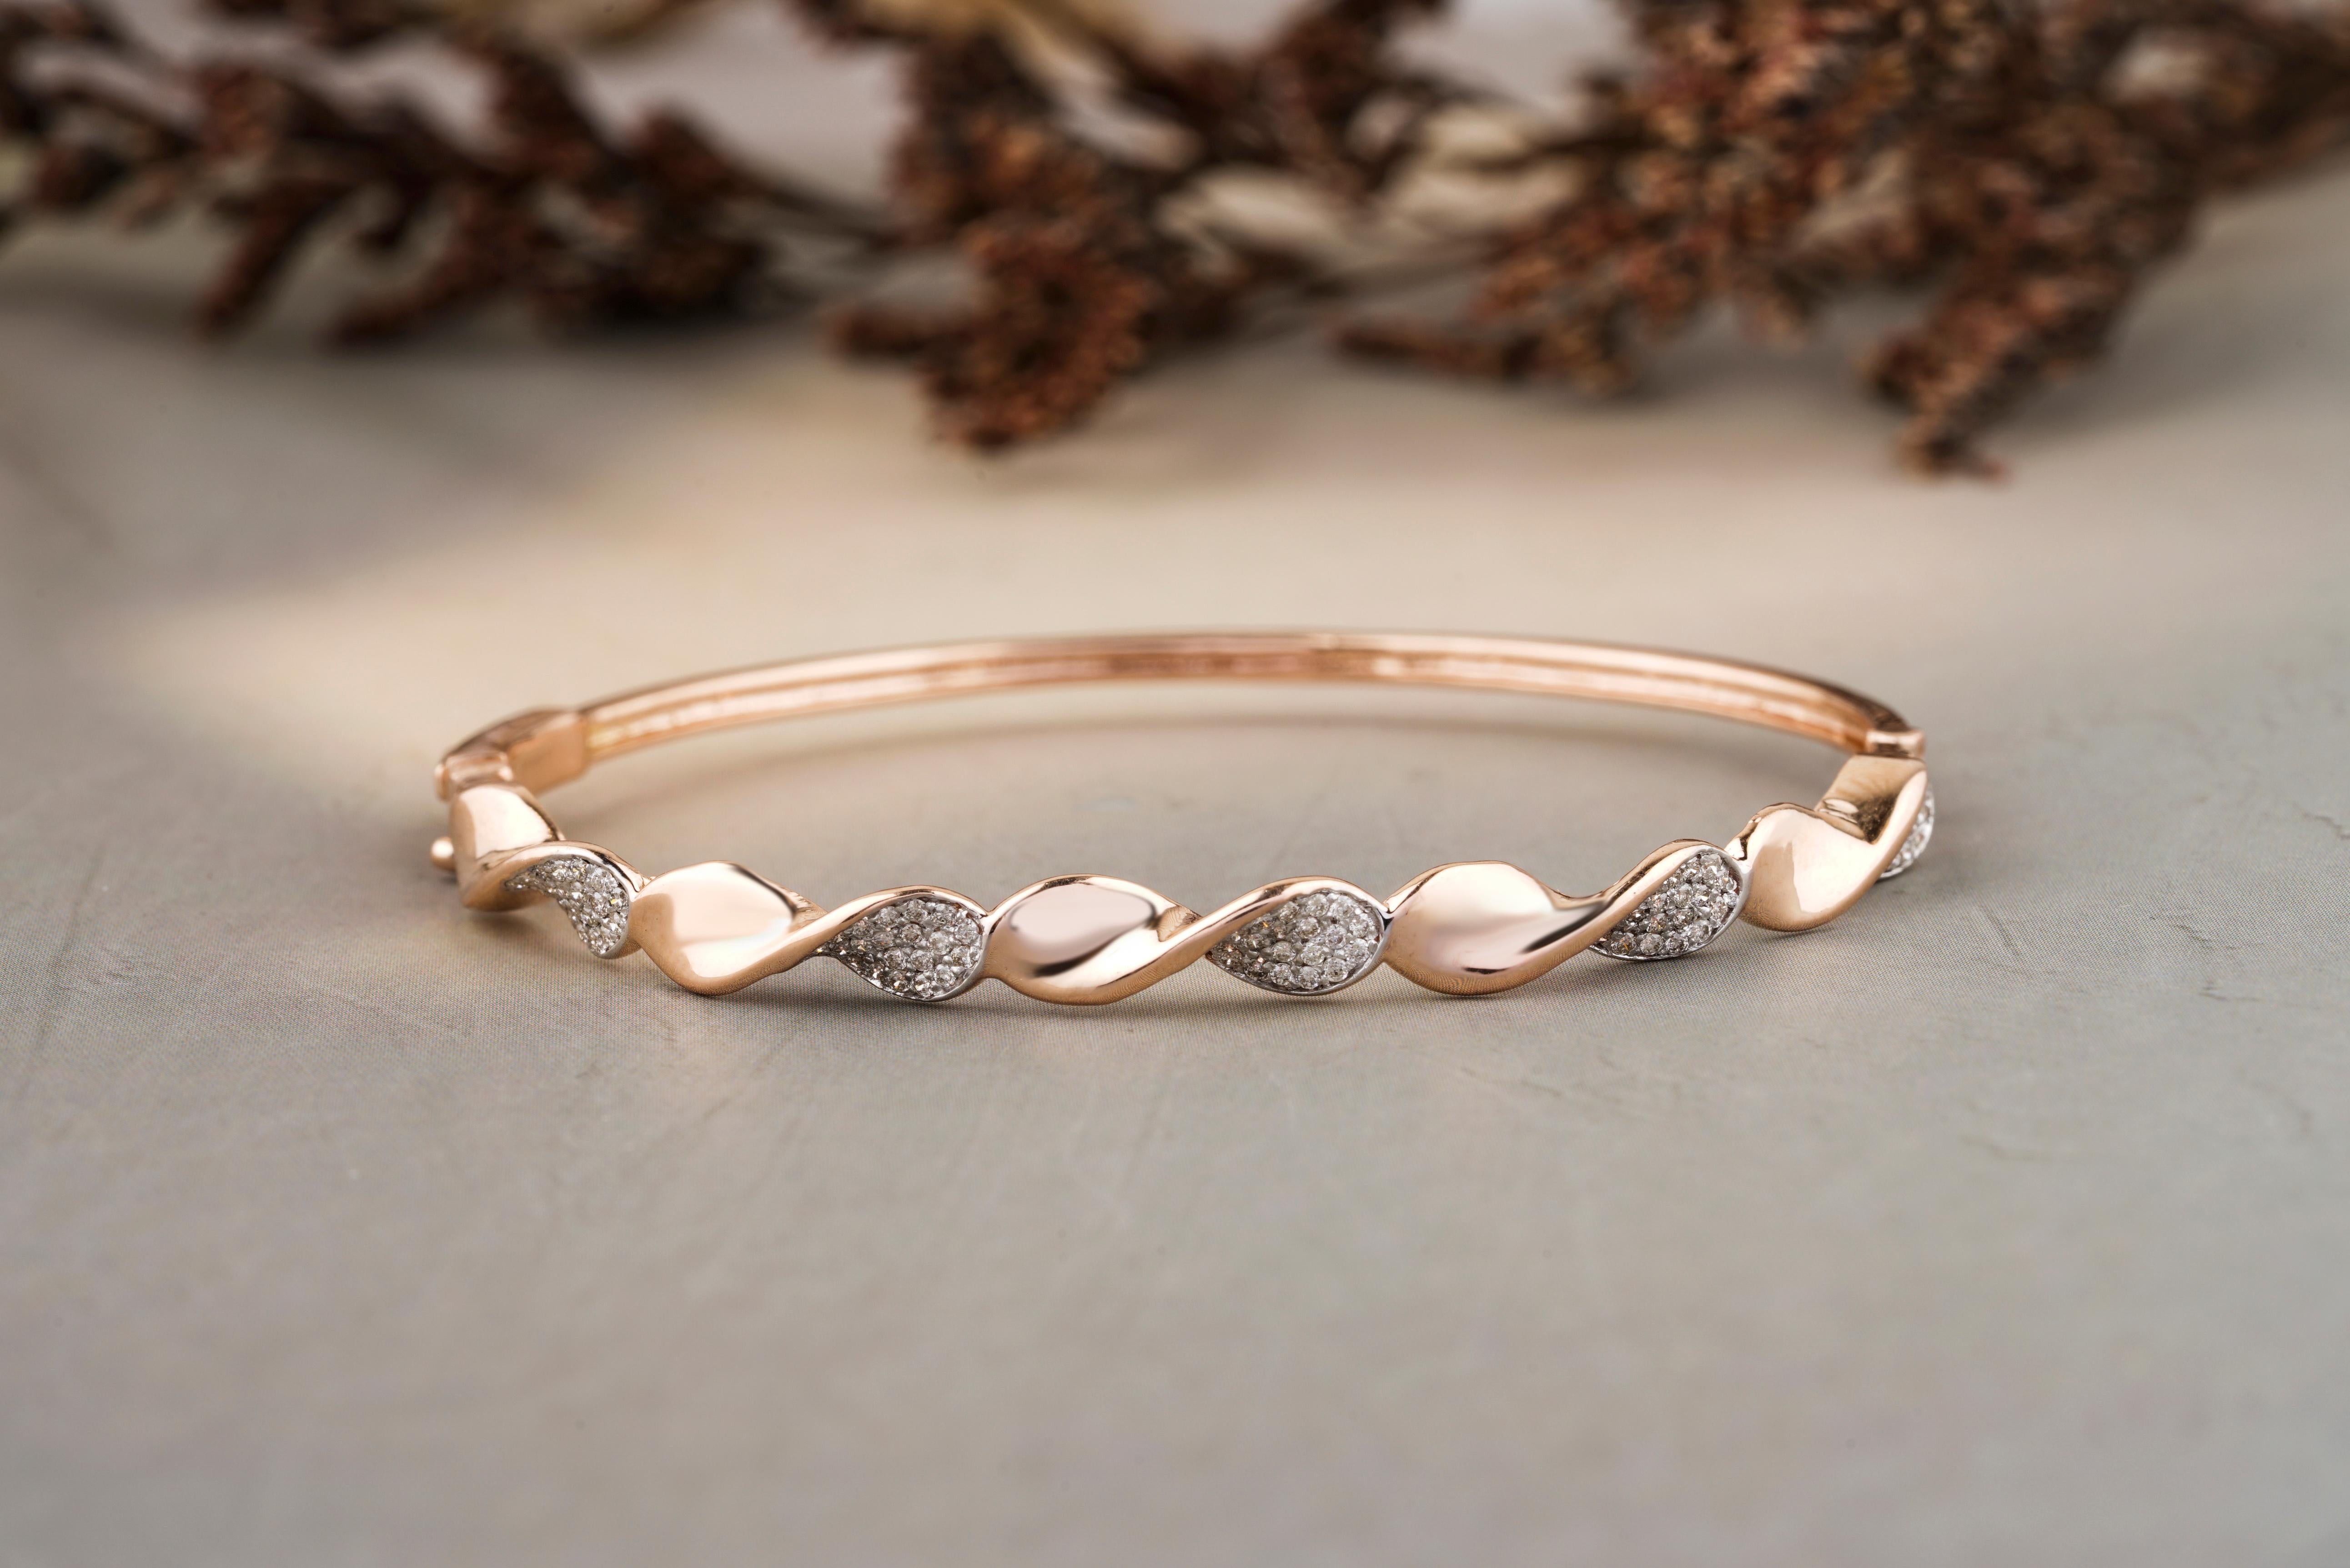 Das Twisted Wavy Diamond Bracelet ist ein atemberaubendes Schmuckstück aus massivem 18k Gold. Sein Design besticht durch eine Mischung aus gedrehten und gewellten Elementen, die durch schillernde Diamanten ergänzt werden. Dieses Armband strahlt